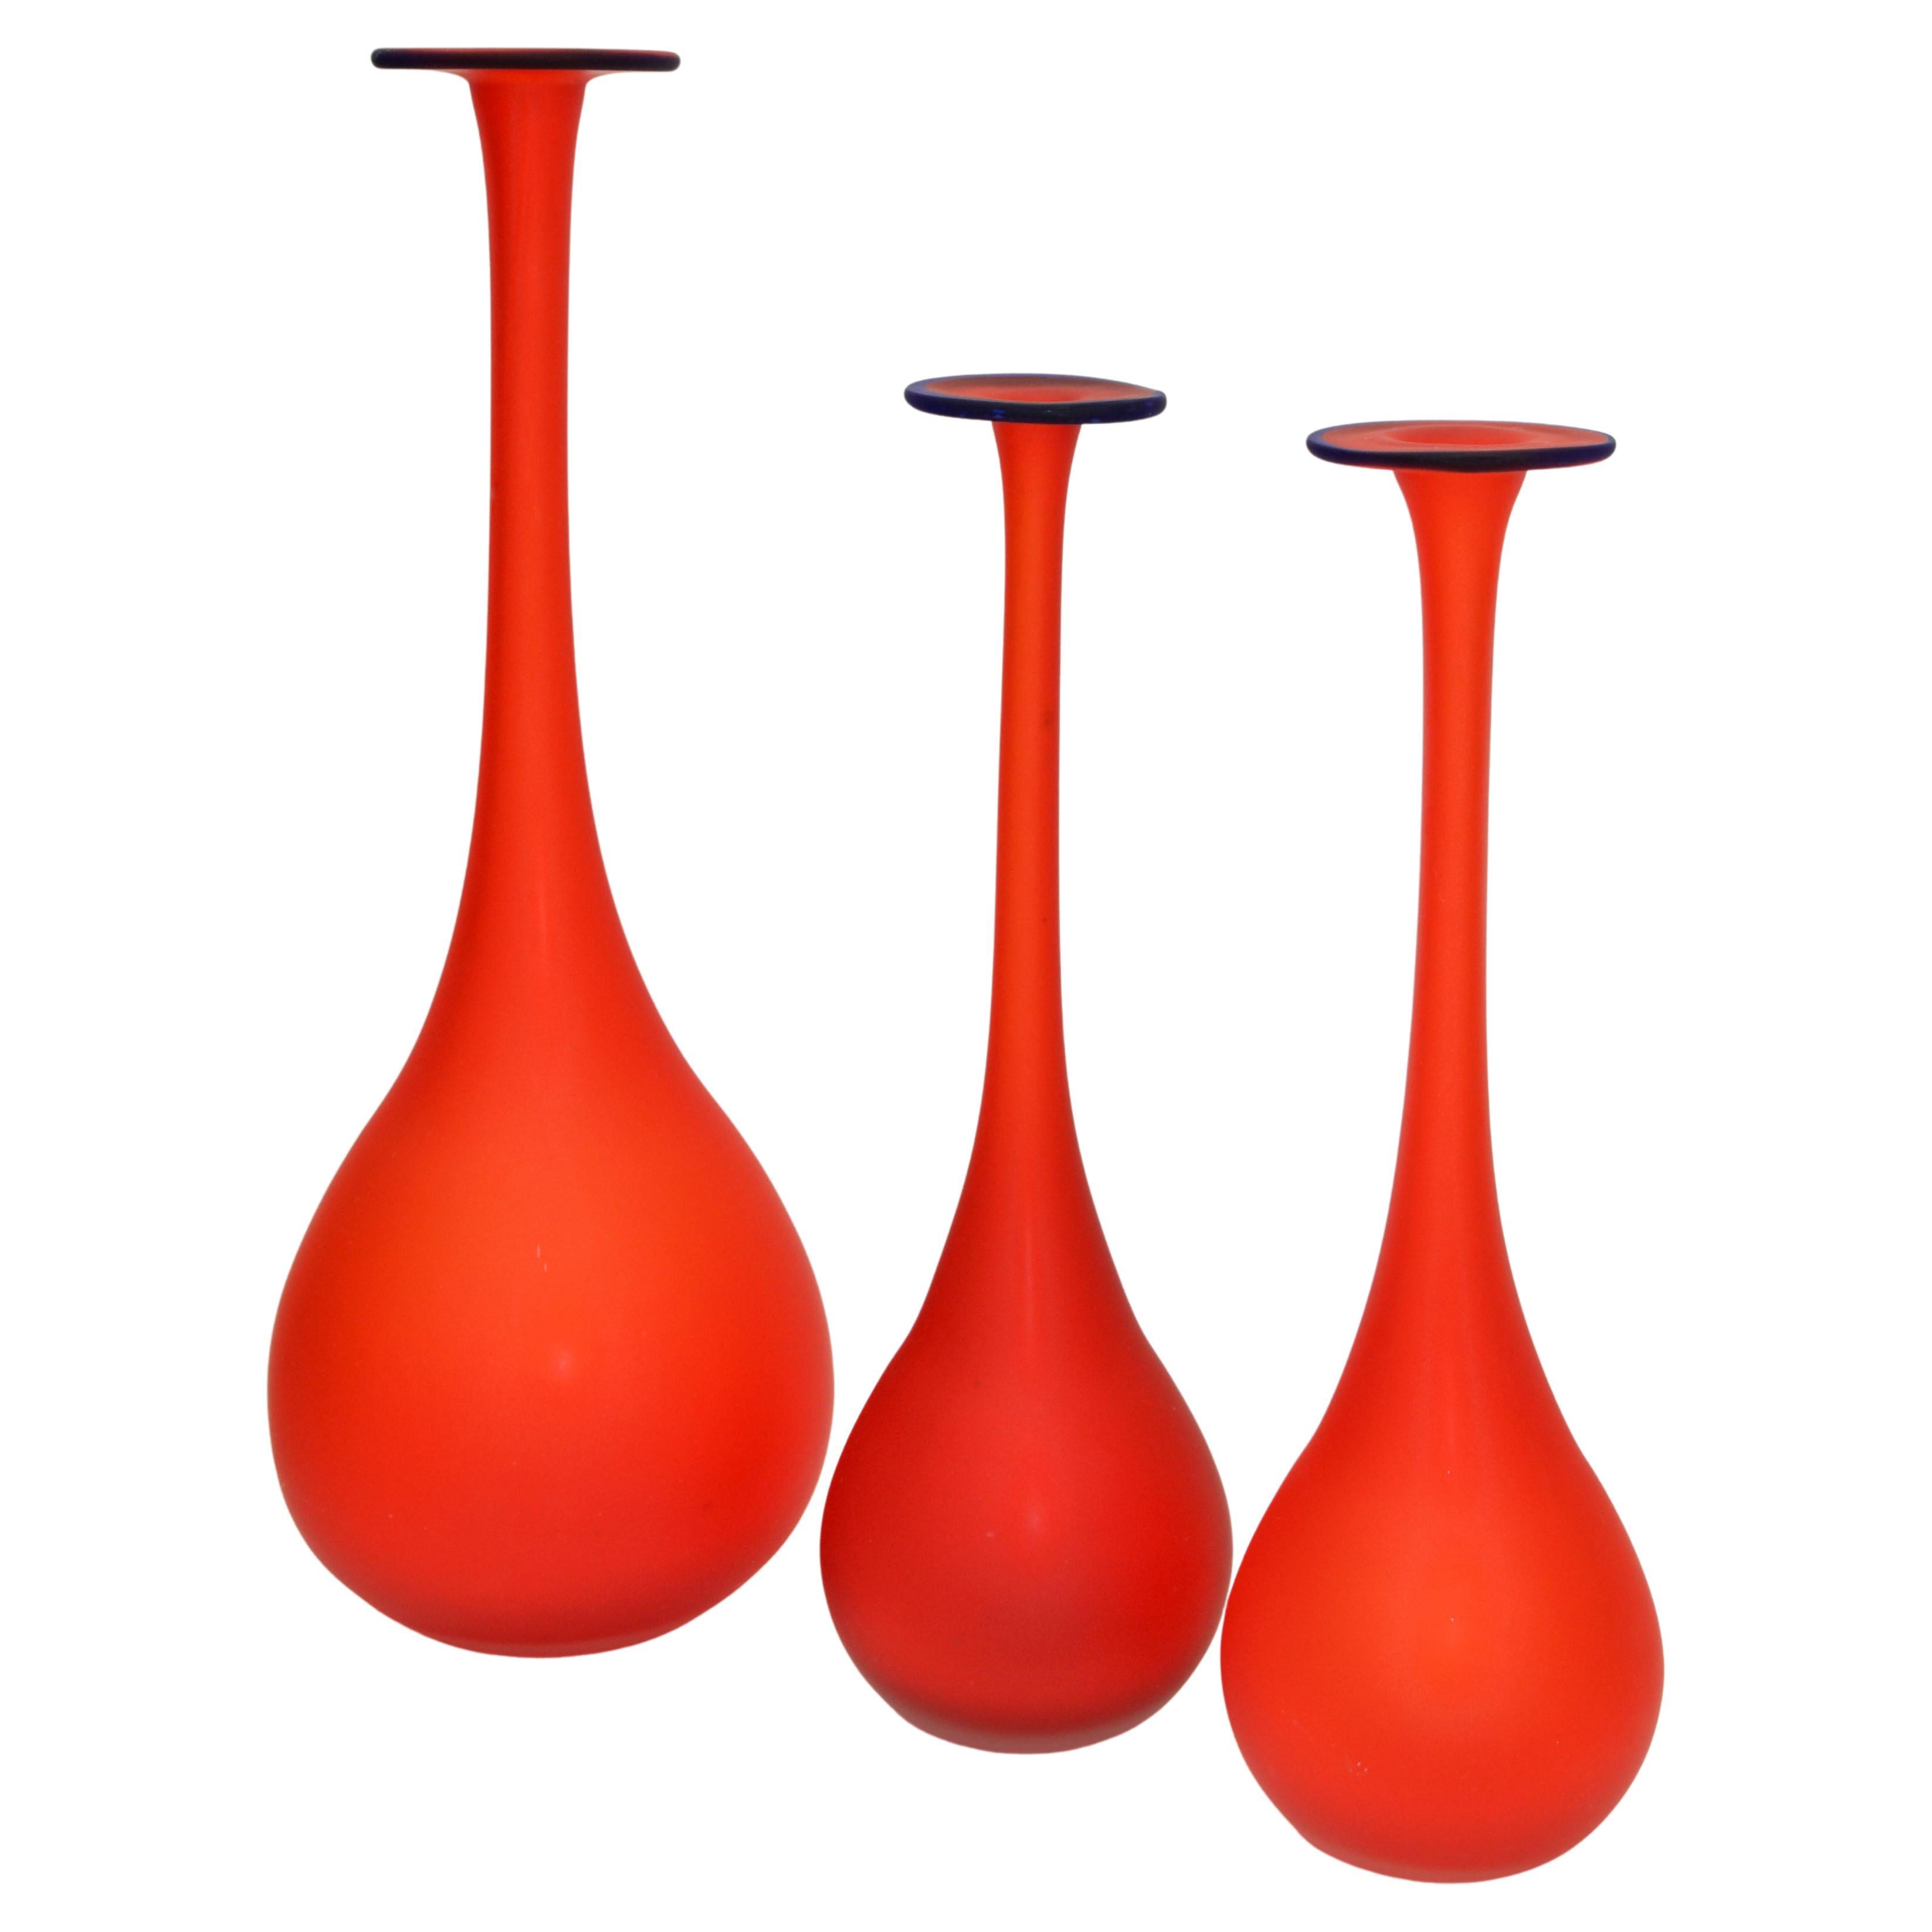 3 verschachtelte Vasen im Moretti-Stil aus durchscheinendem rotem und blauem Satinglas, Italien